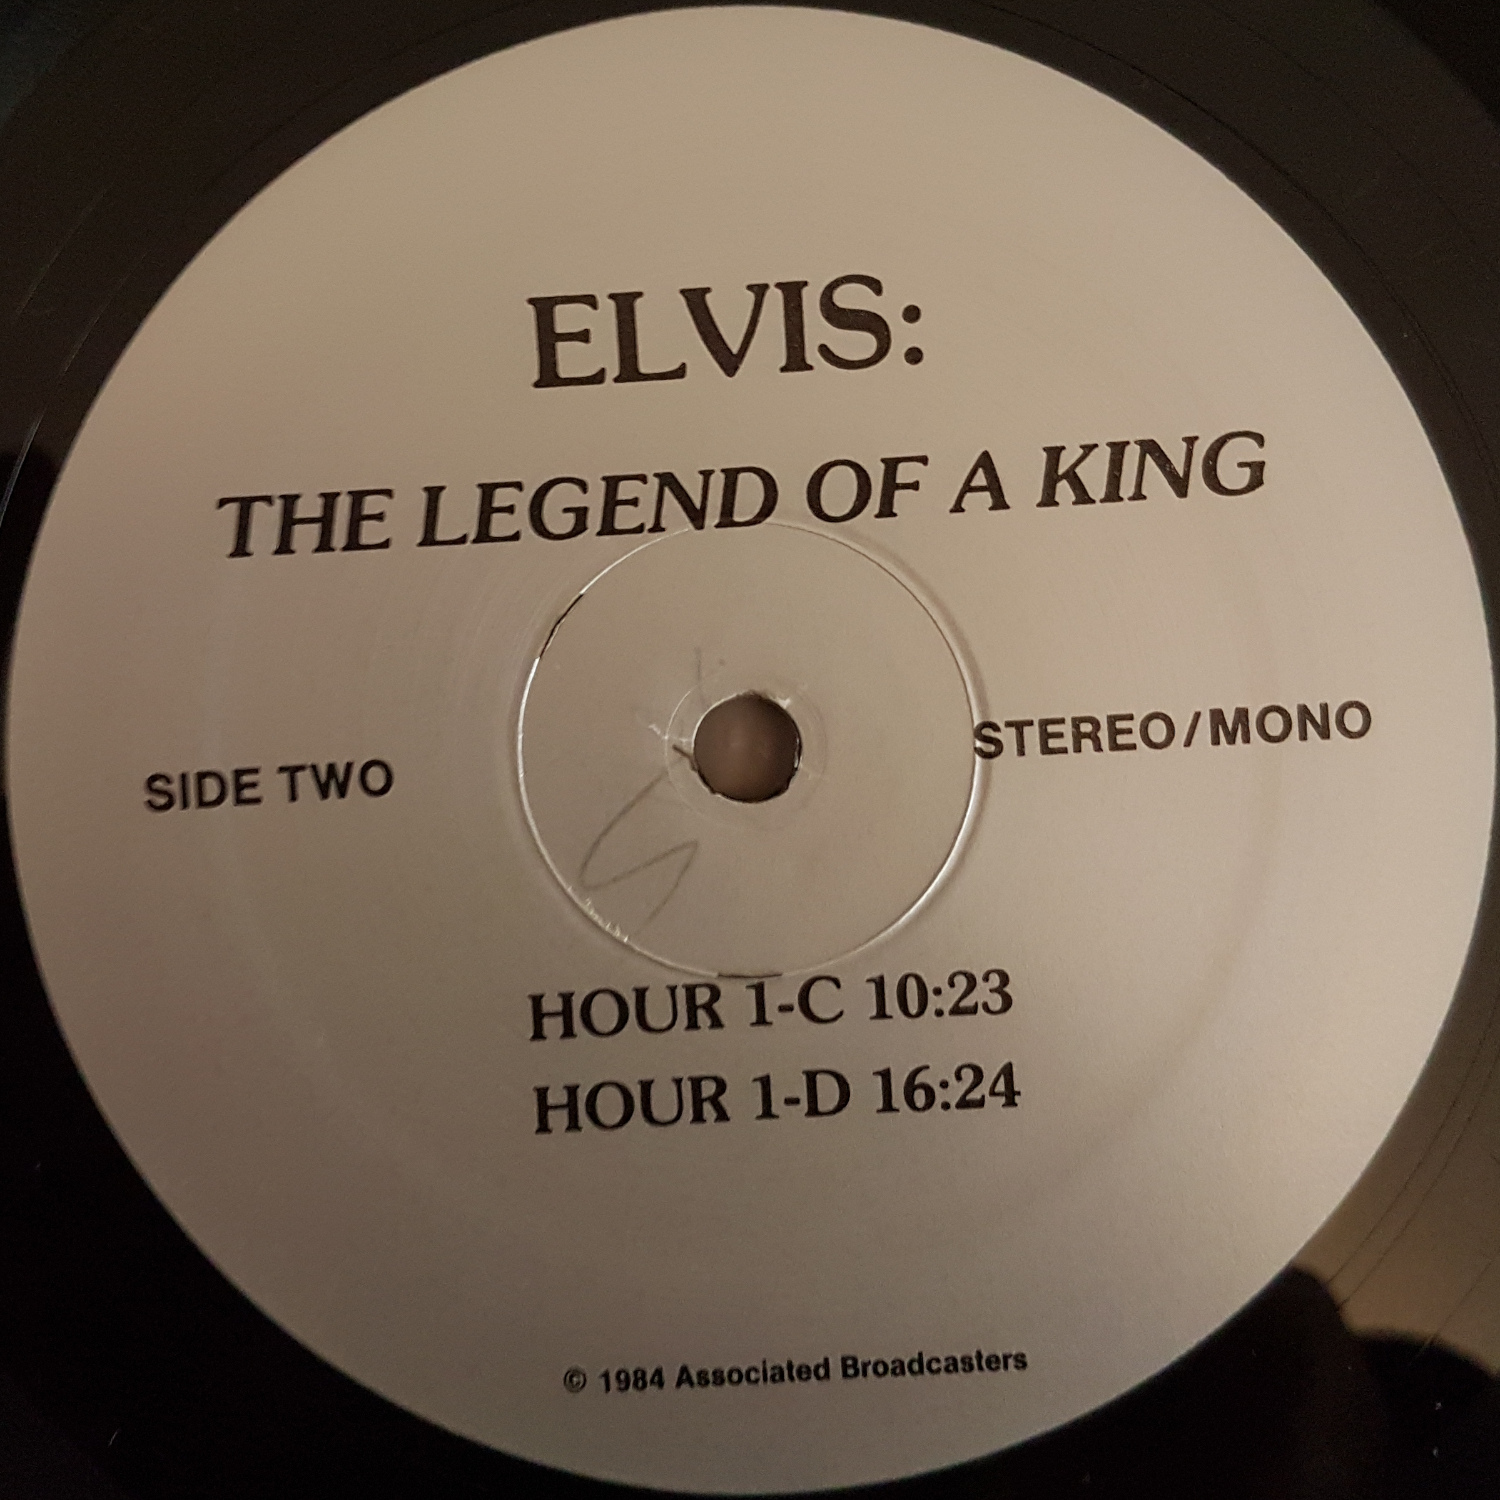 JOHN LEADER - ELVIS THE LEGEND OF A KING (3 Hour Broadcast) Legendofakingrb62rk57